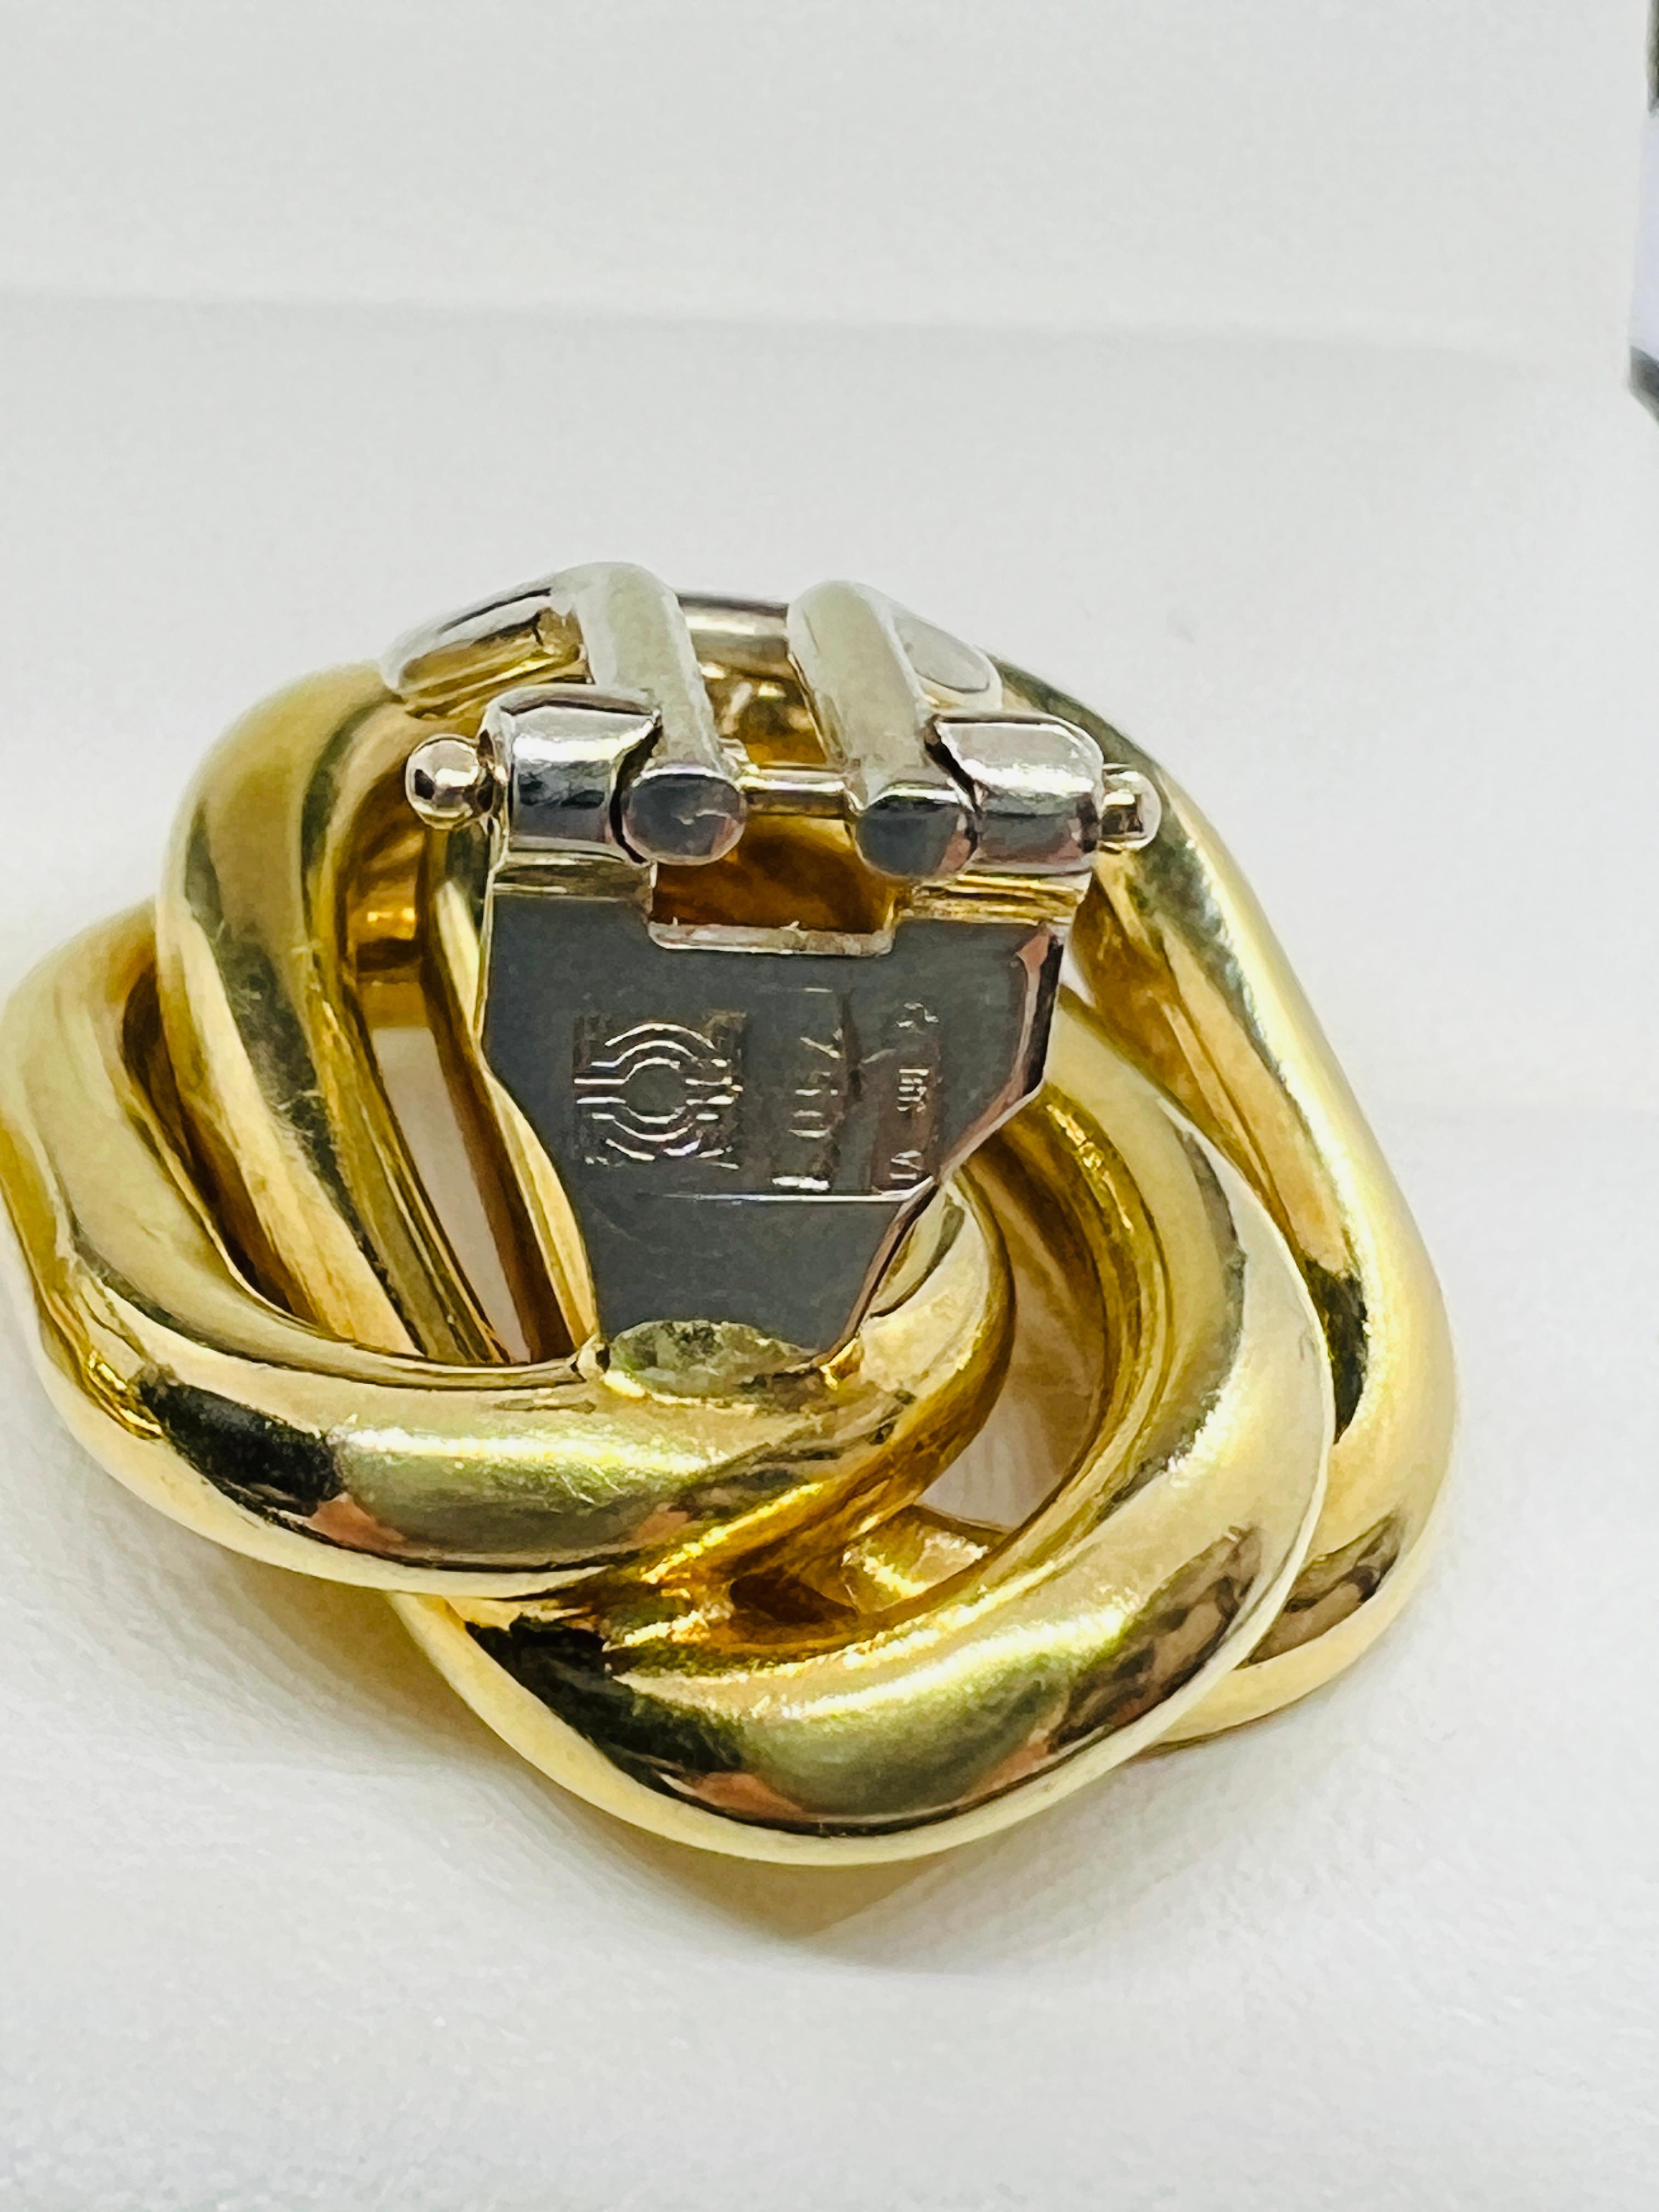 Designer Bvlgari 18K Yellow Gold Mid Century Modern Clip On Earrings 13.5 grams  5